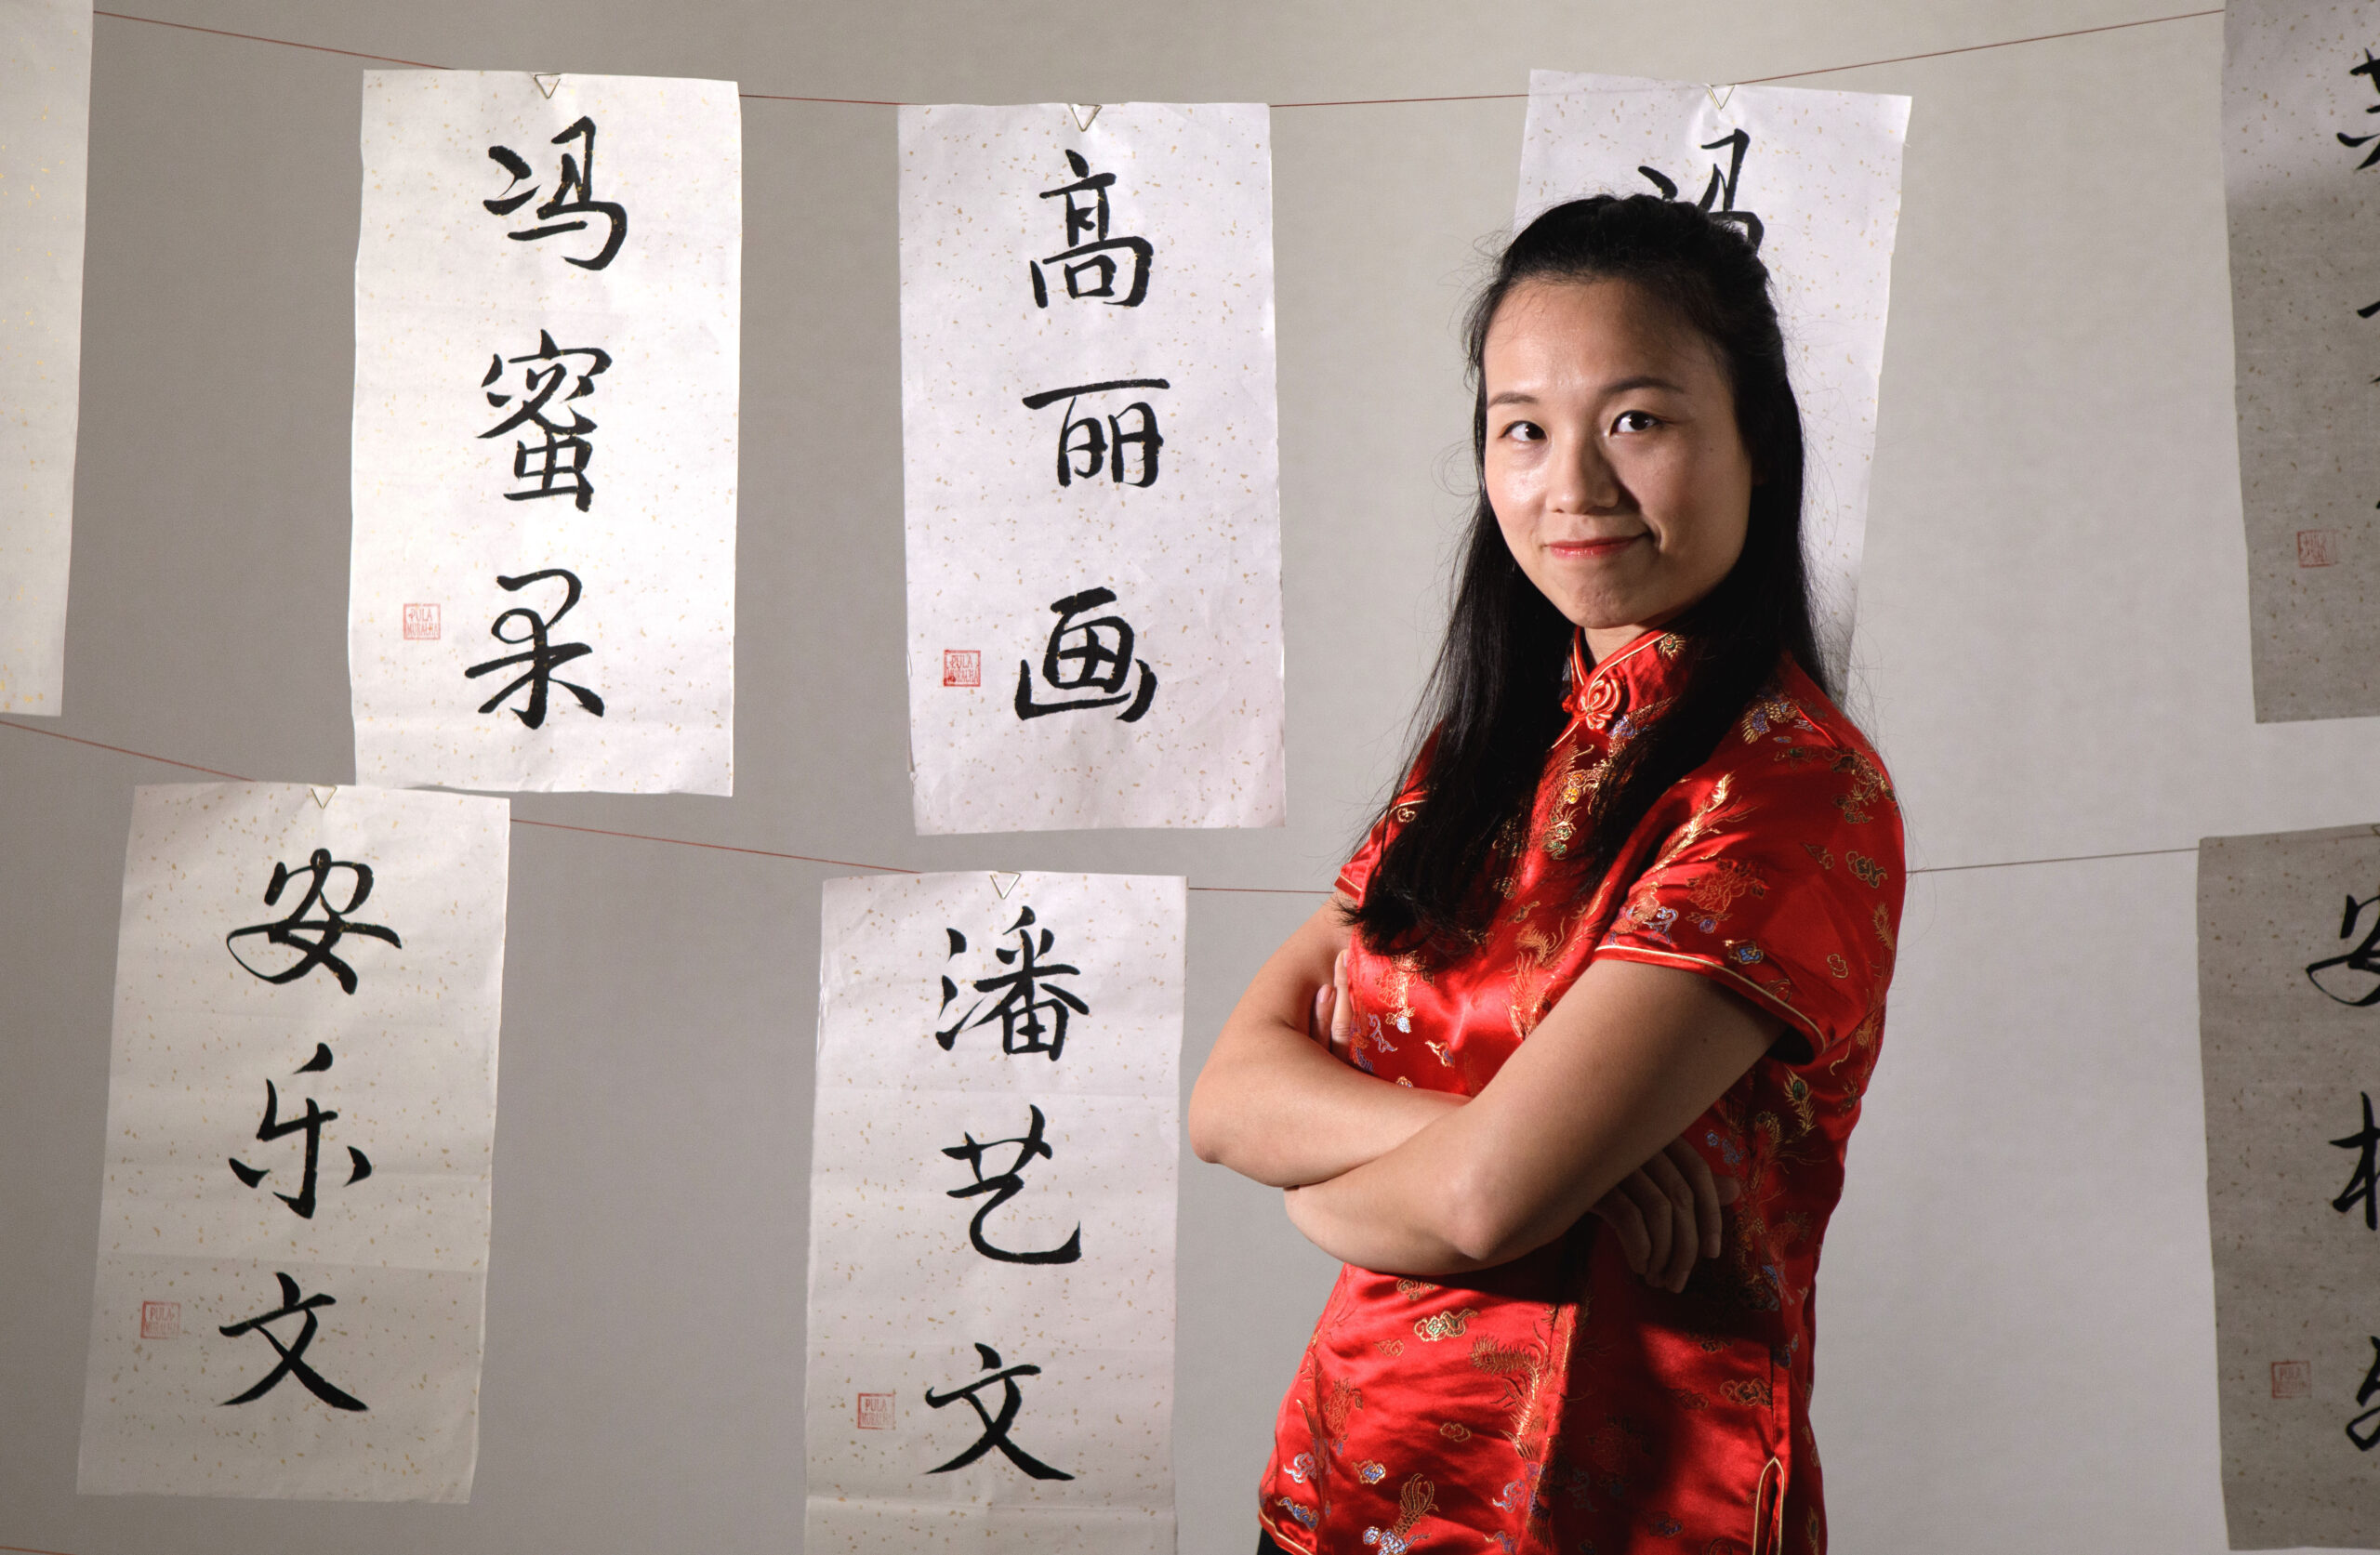 Aprenda 30 frases em chinês para o seu dia a dia